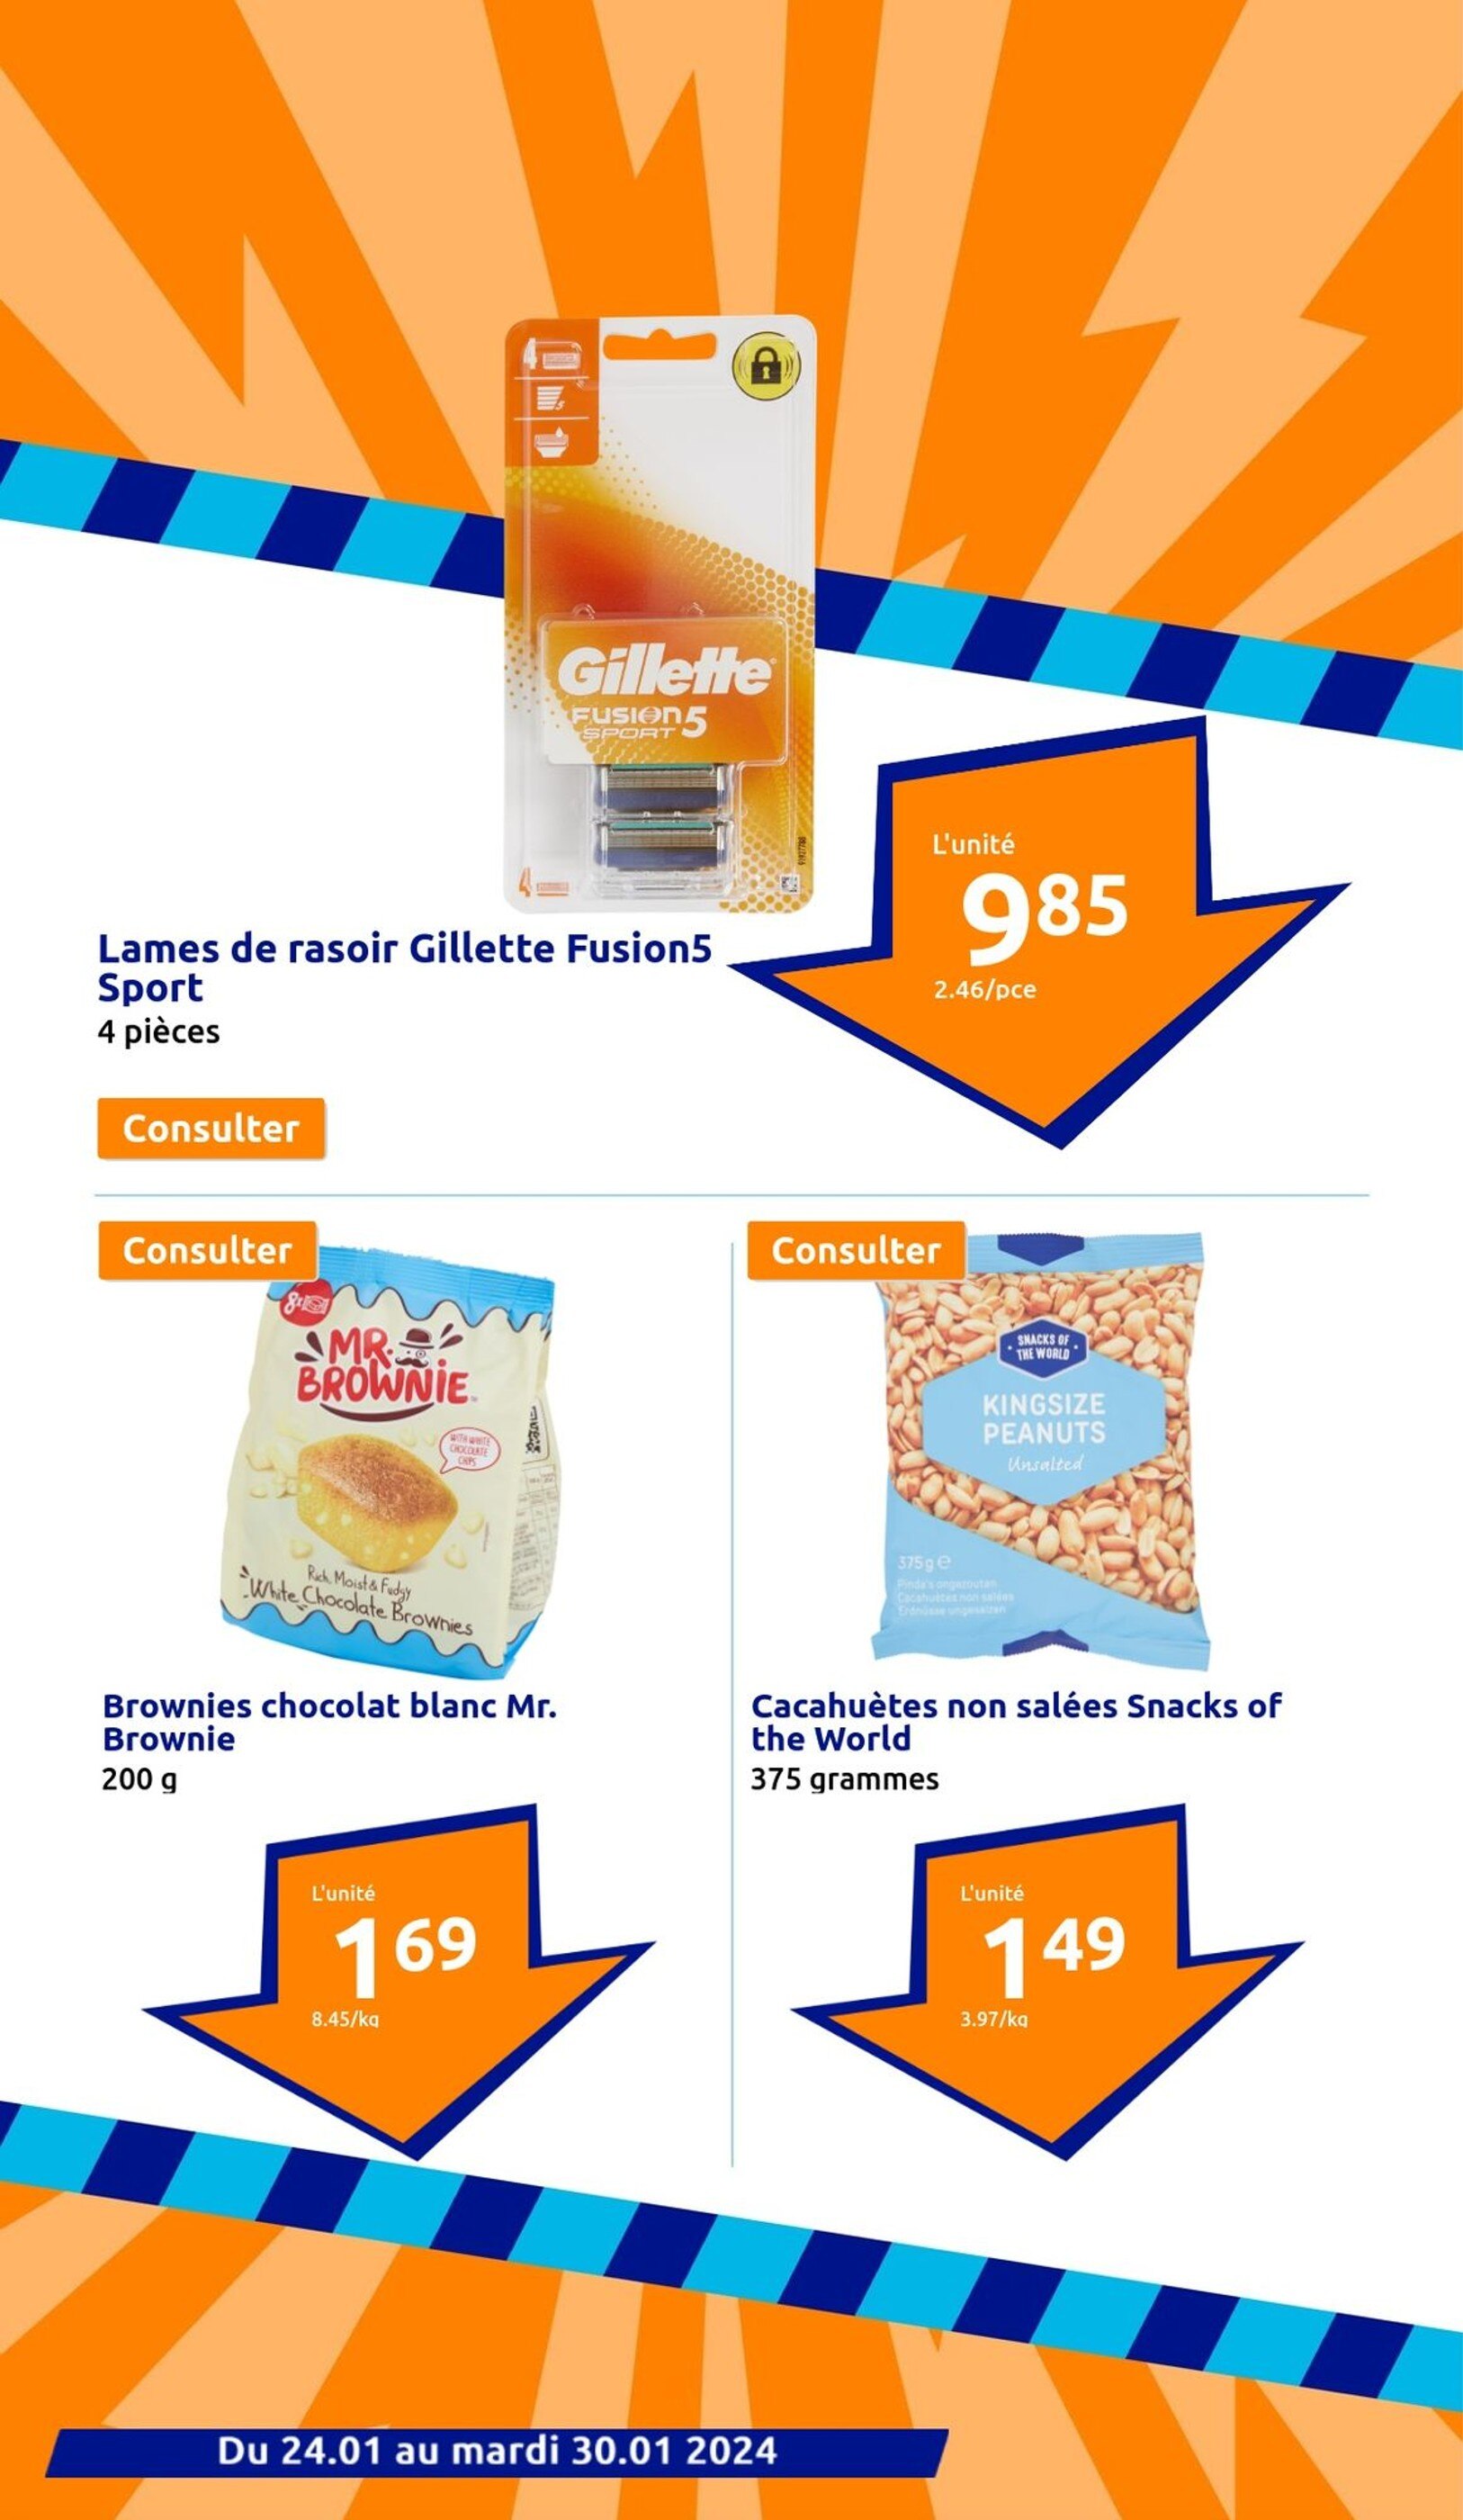 Promo Versele-laga 20% de remise sur tous les snacks crock